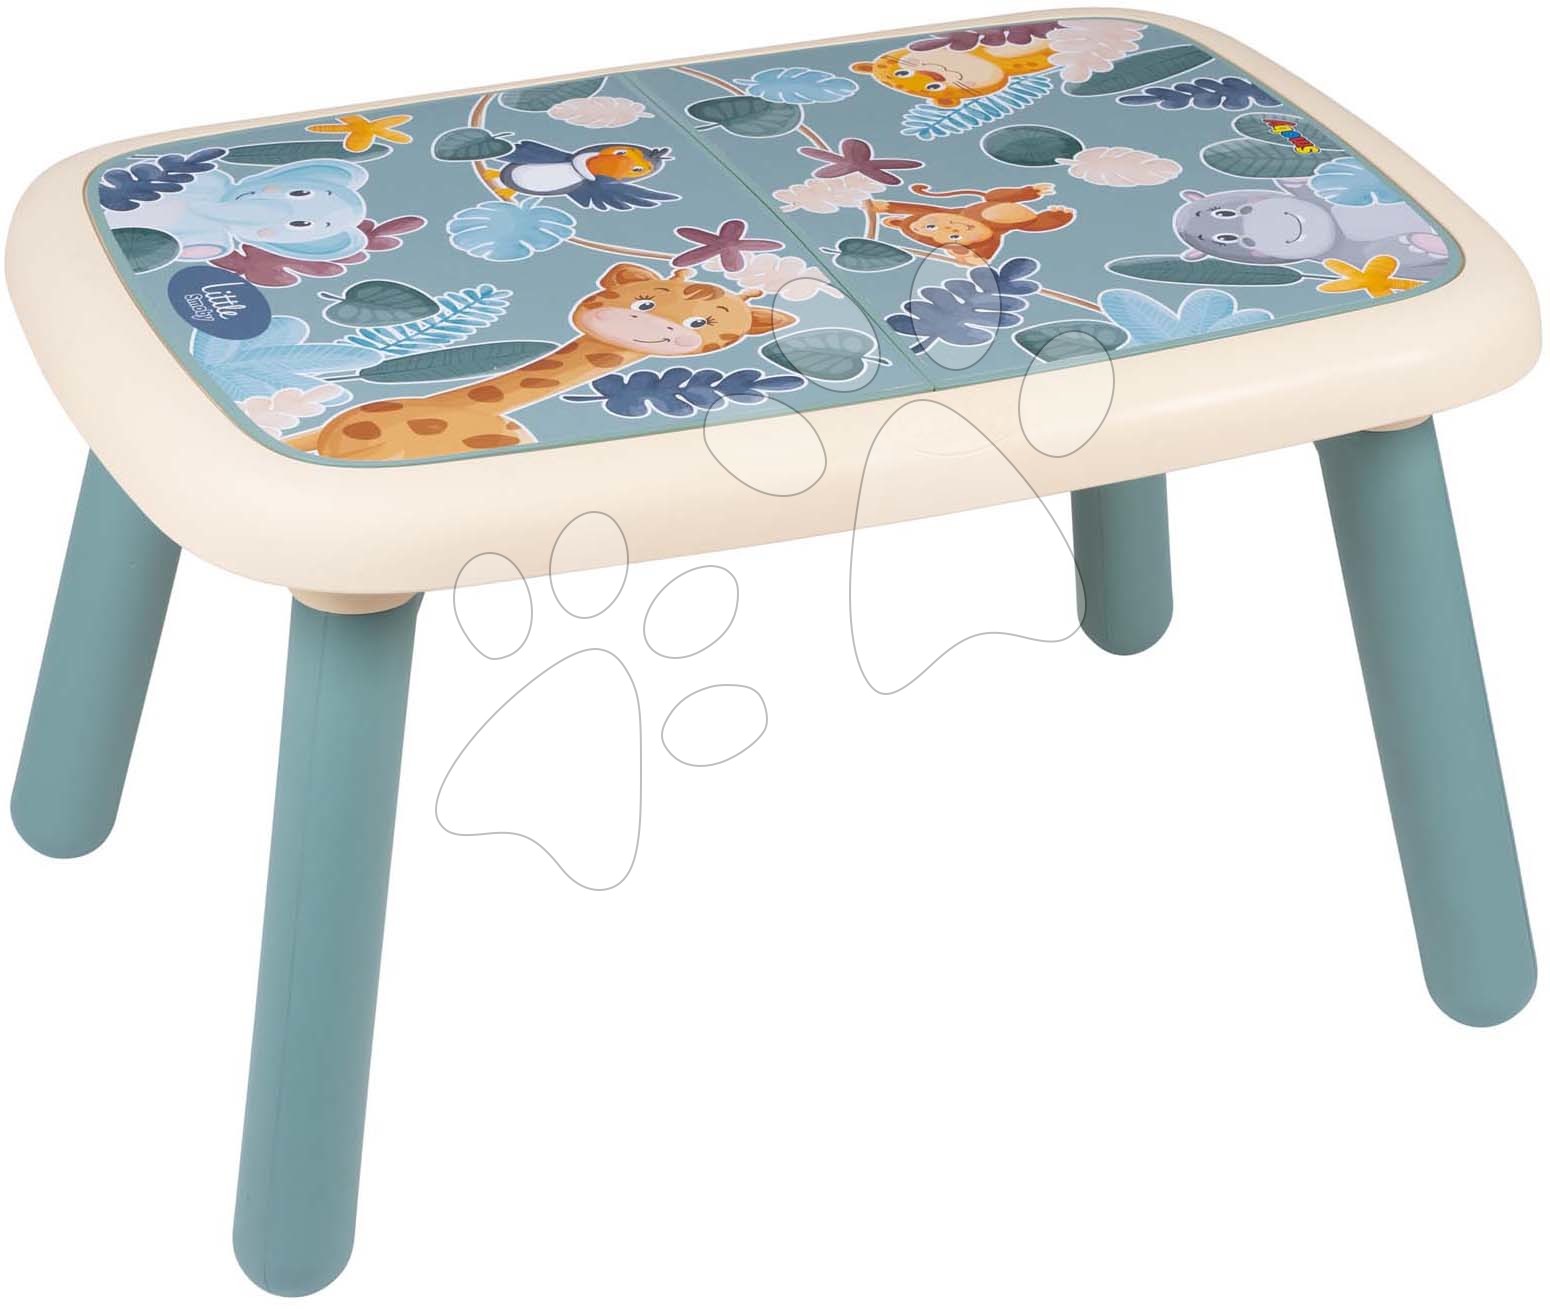 Stůl pro děti Table Green Little Smoby s obrázky zvířátek a UV filtrem od 18 měsíců